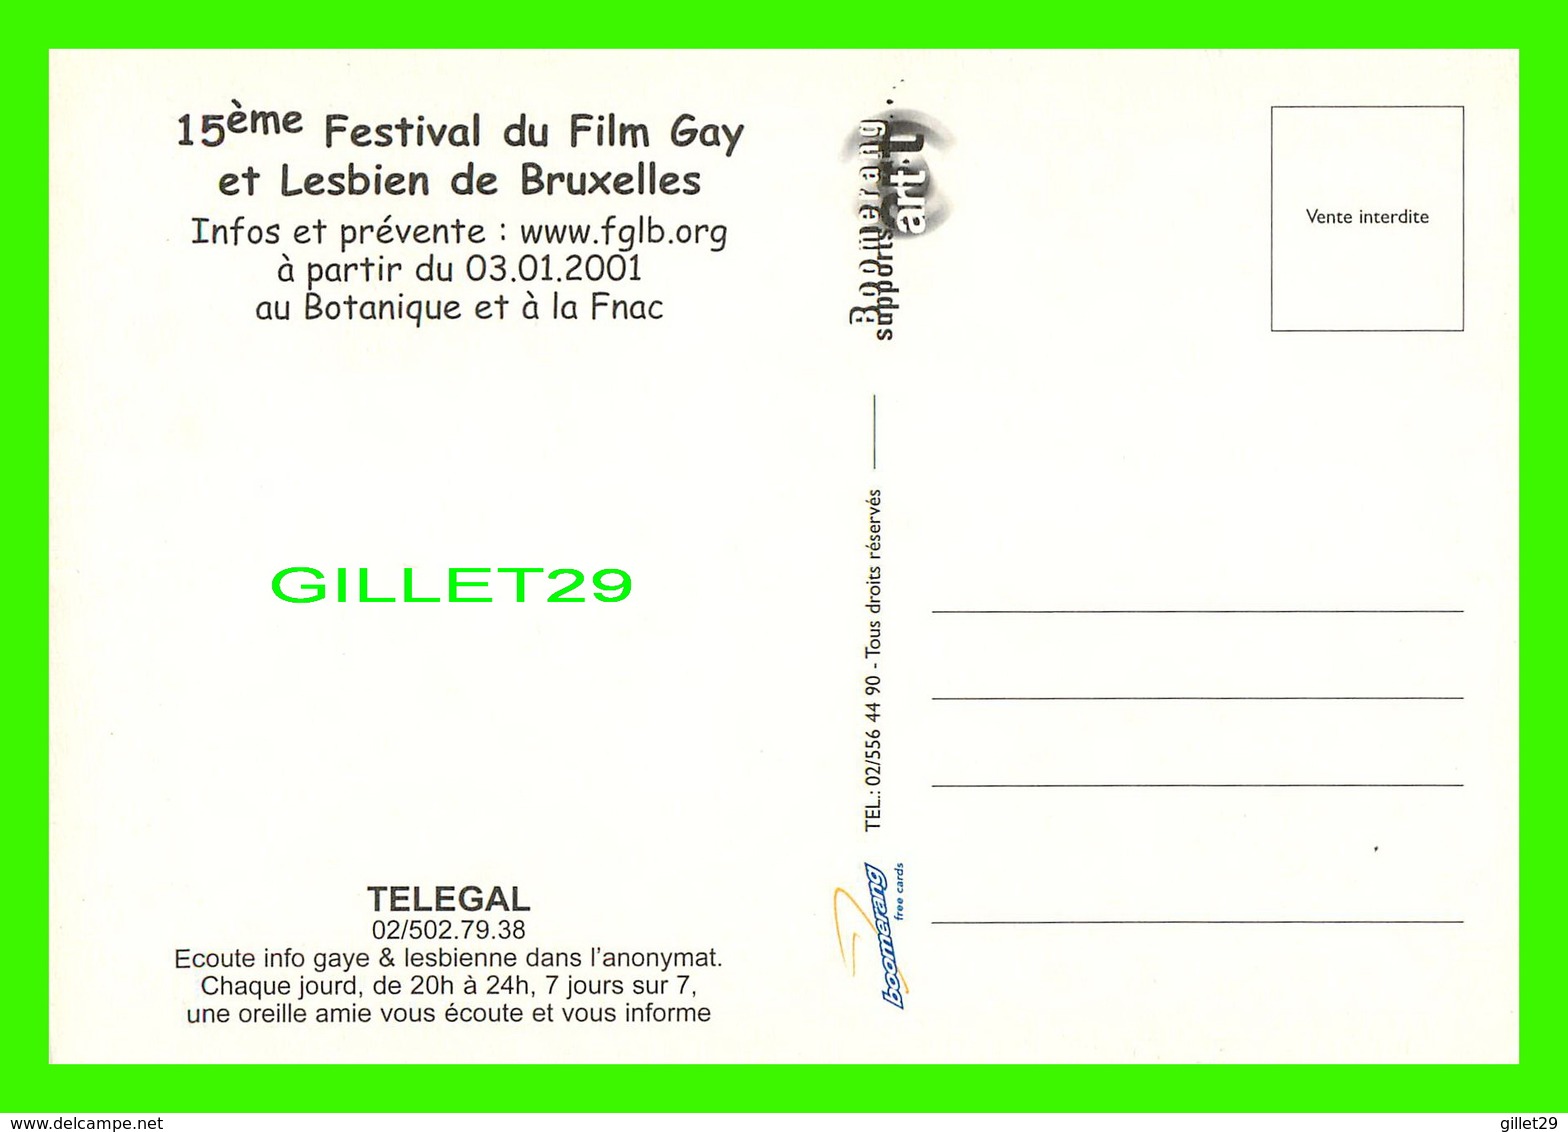 AFFICHES DE FILM - 15e FESTIVAL DU FILM GAY ET LESBIEN DE BRUXELLES, BELGIQUE EN 2001 - - Series De Televisión